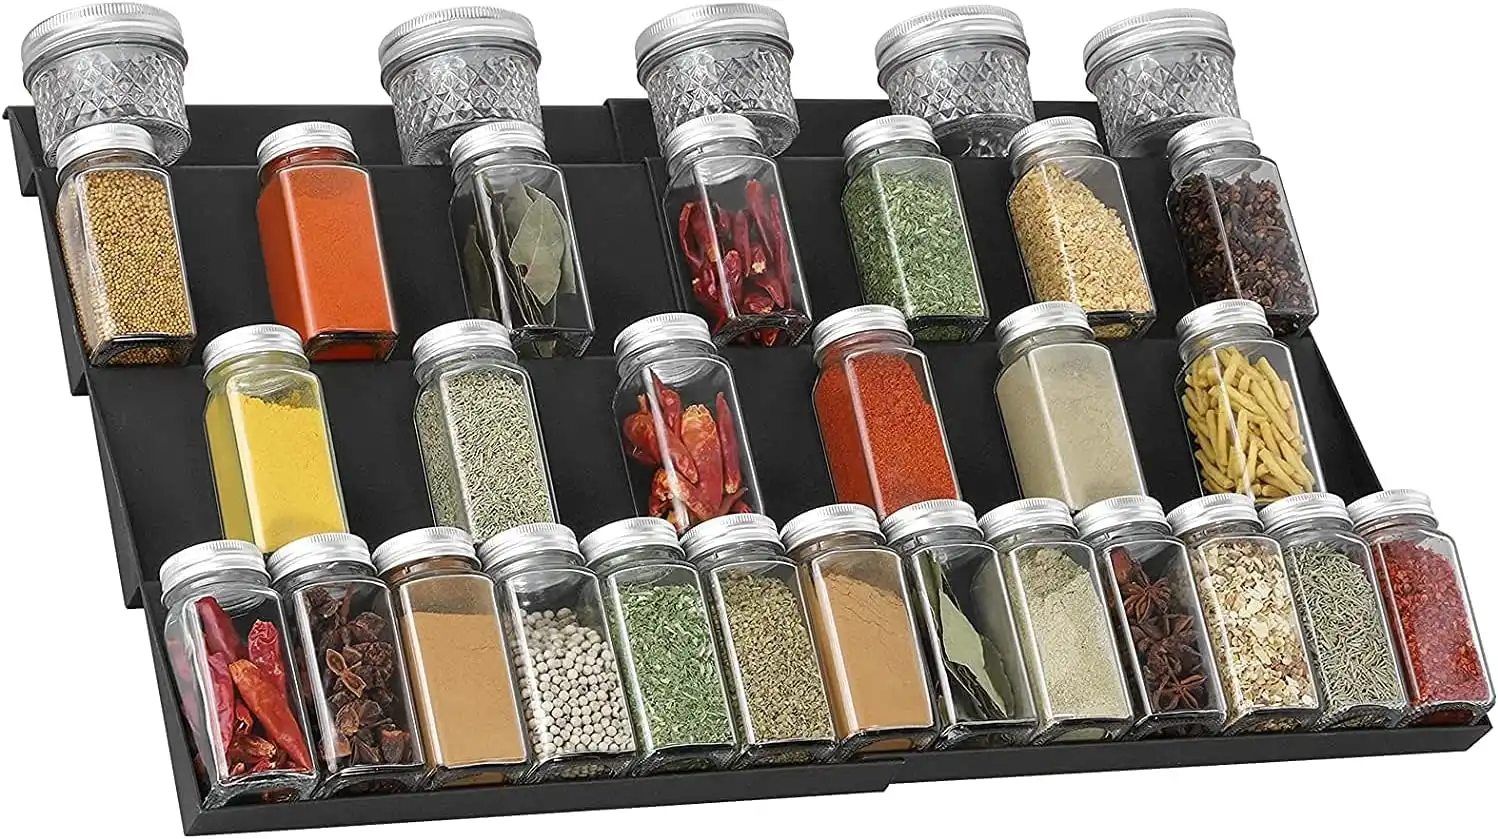 4 Tier Spice Rack Drawer Organizer Kitchen Cabinet Insert 30-60 cm W 2 Pack Black